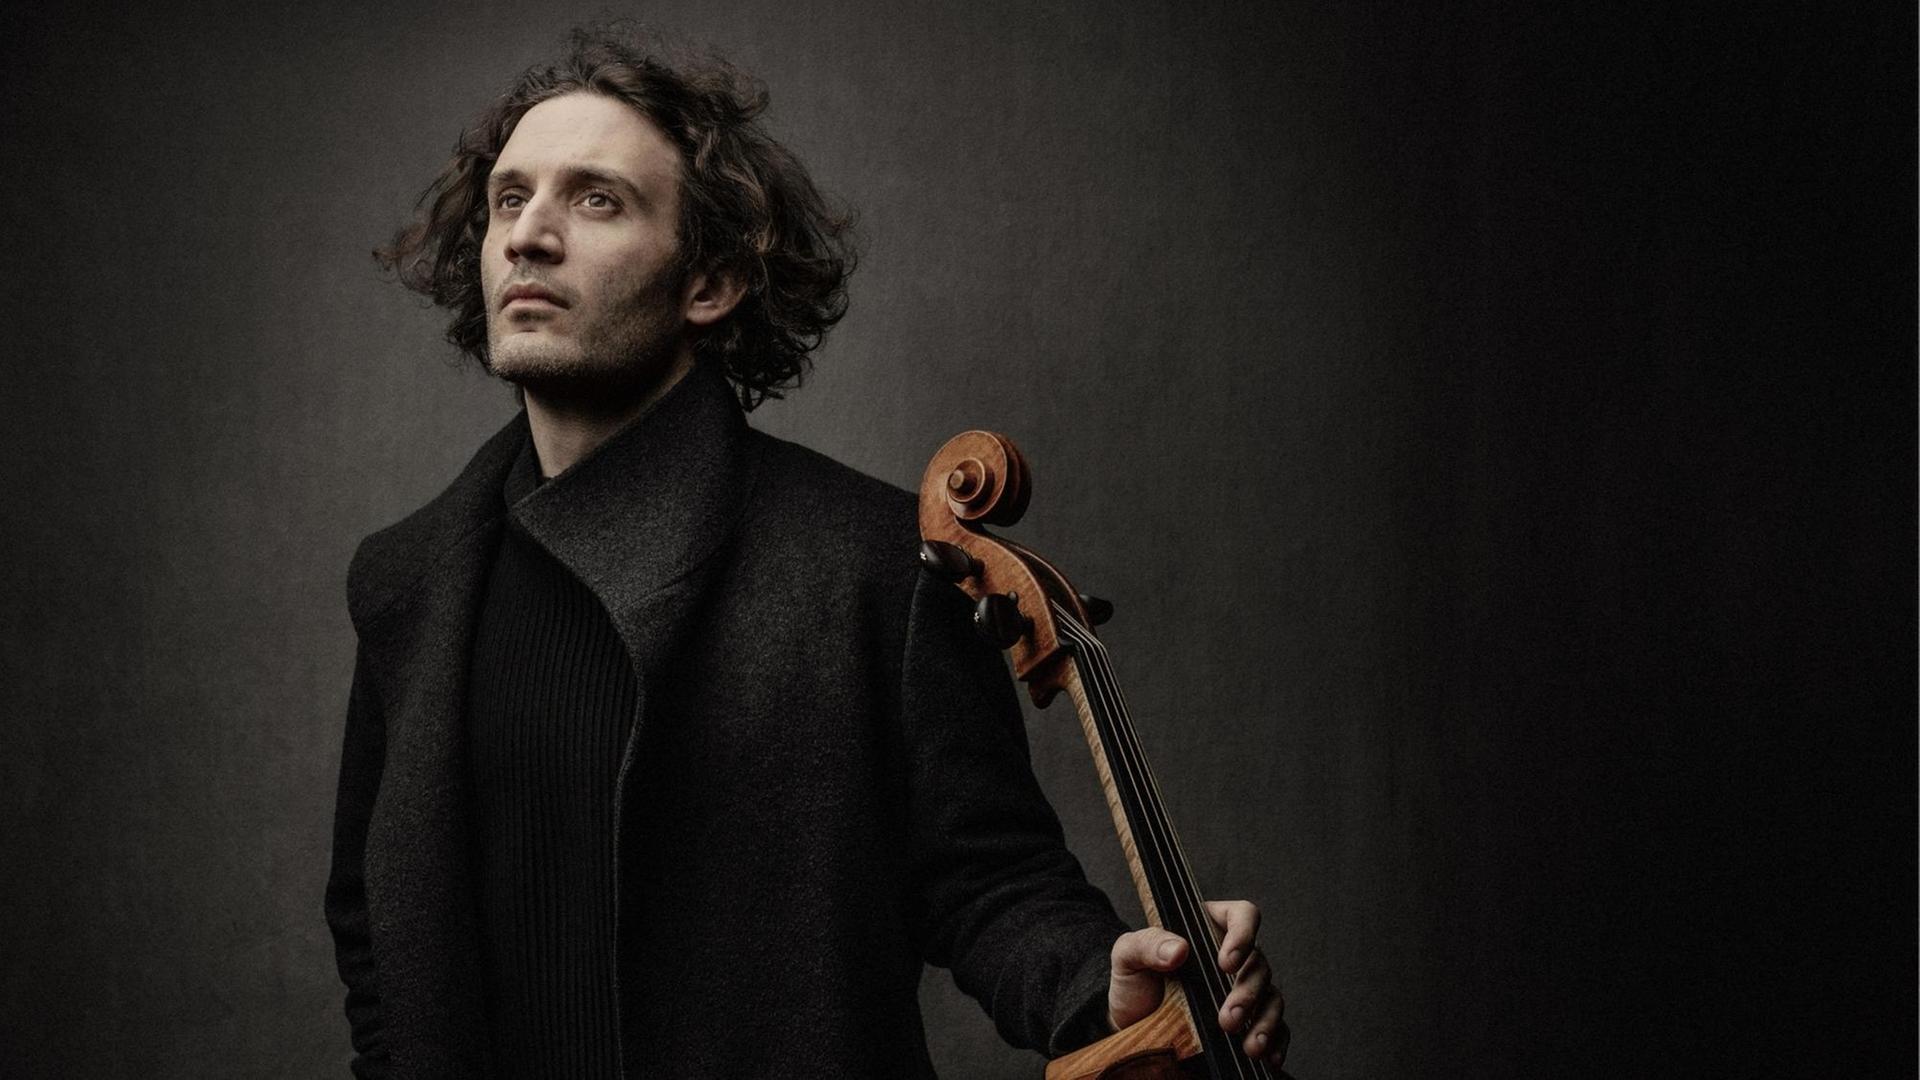 Ein Mann mit mittellangen, dunklen Haaren steht in dunkler Kleidung vor einem dunklen Hintergrund und hält ein Cello in seiner linken Hand.